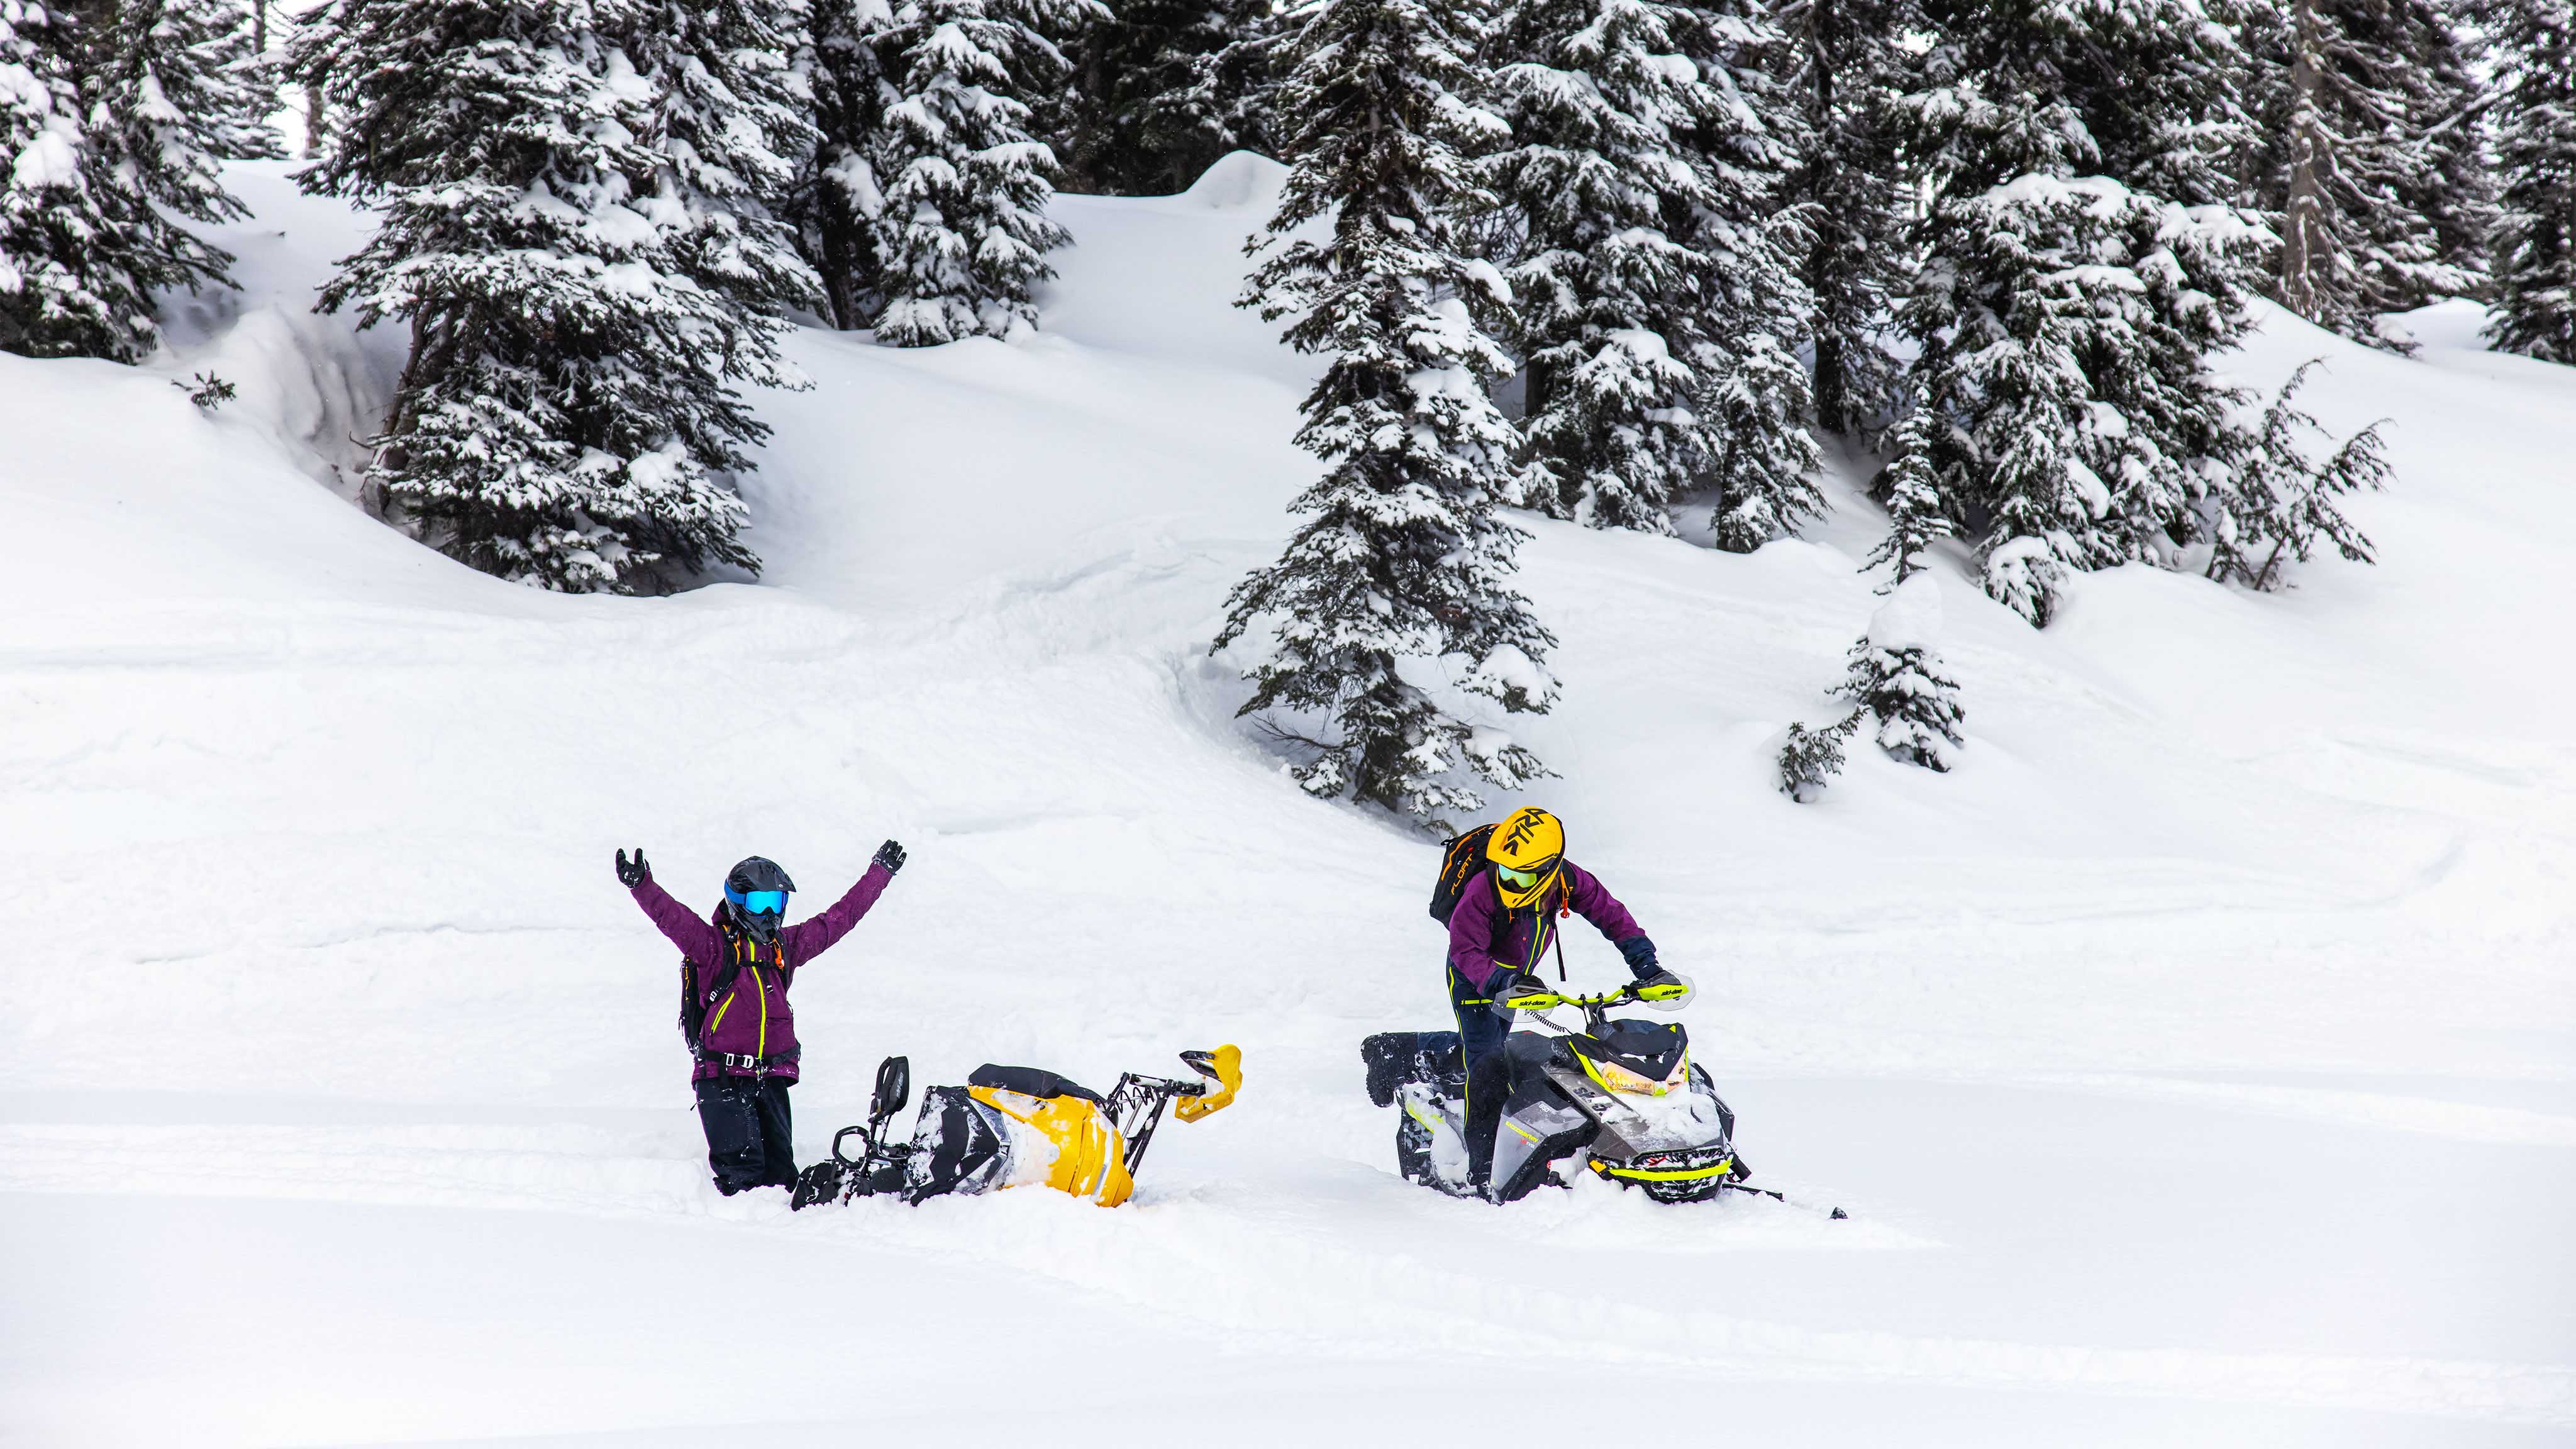 Deux femmes en train d'apprendre à conduire des motoneiges Ski-Doo en neige profonde